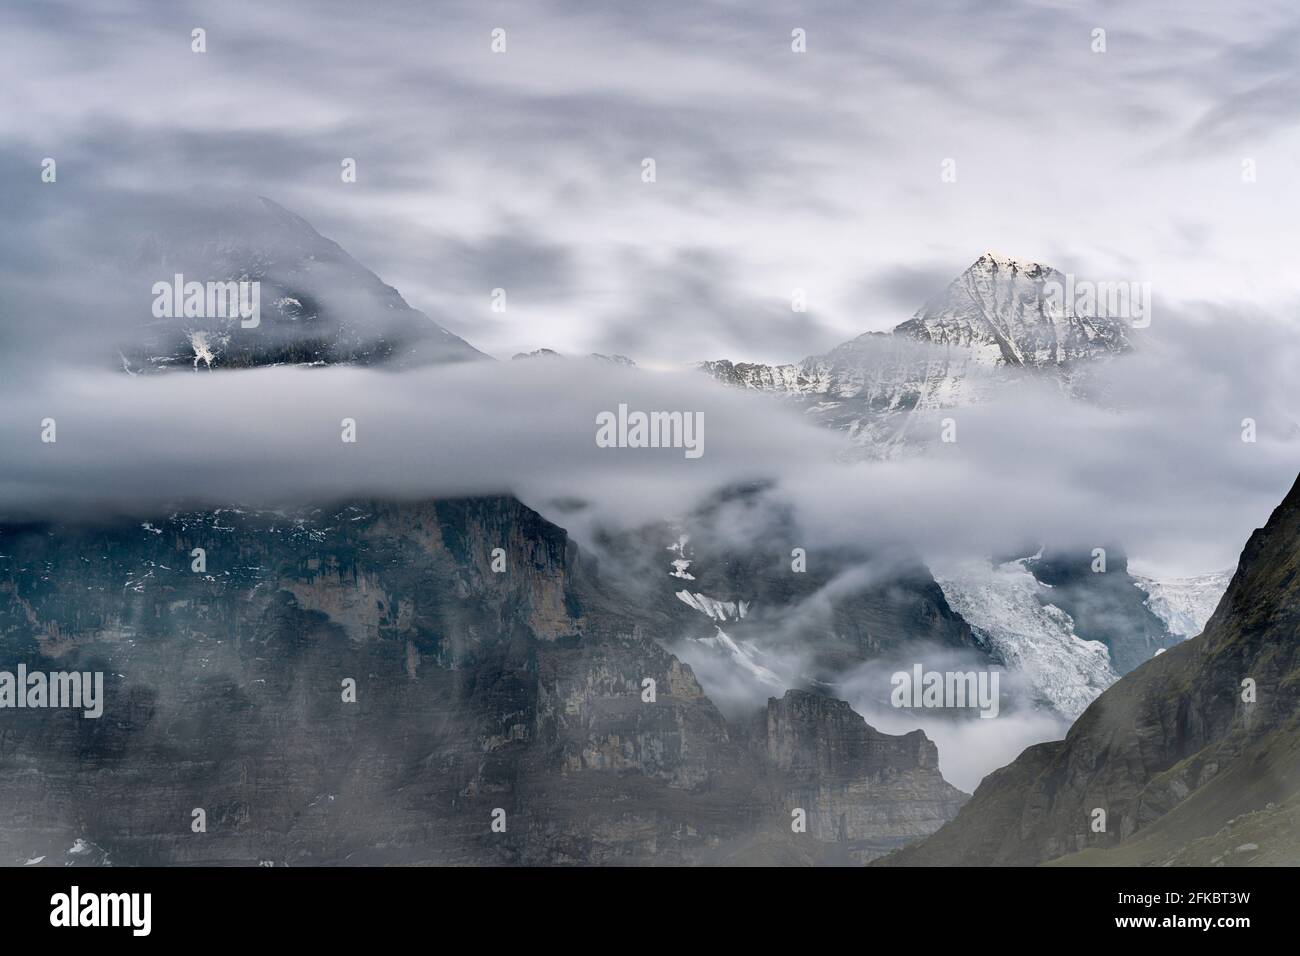 Los picos de montaña Eiger y Monch en el cielo nublado, Mannlichen, Grindelwald, Oberland bernés, Cantón de Berna, Suiza, Europa Foto de stock